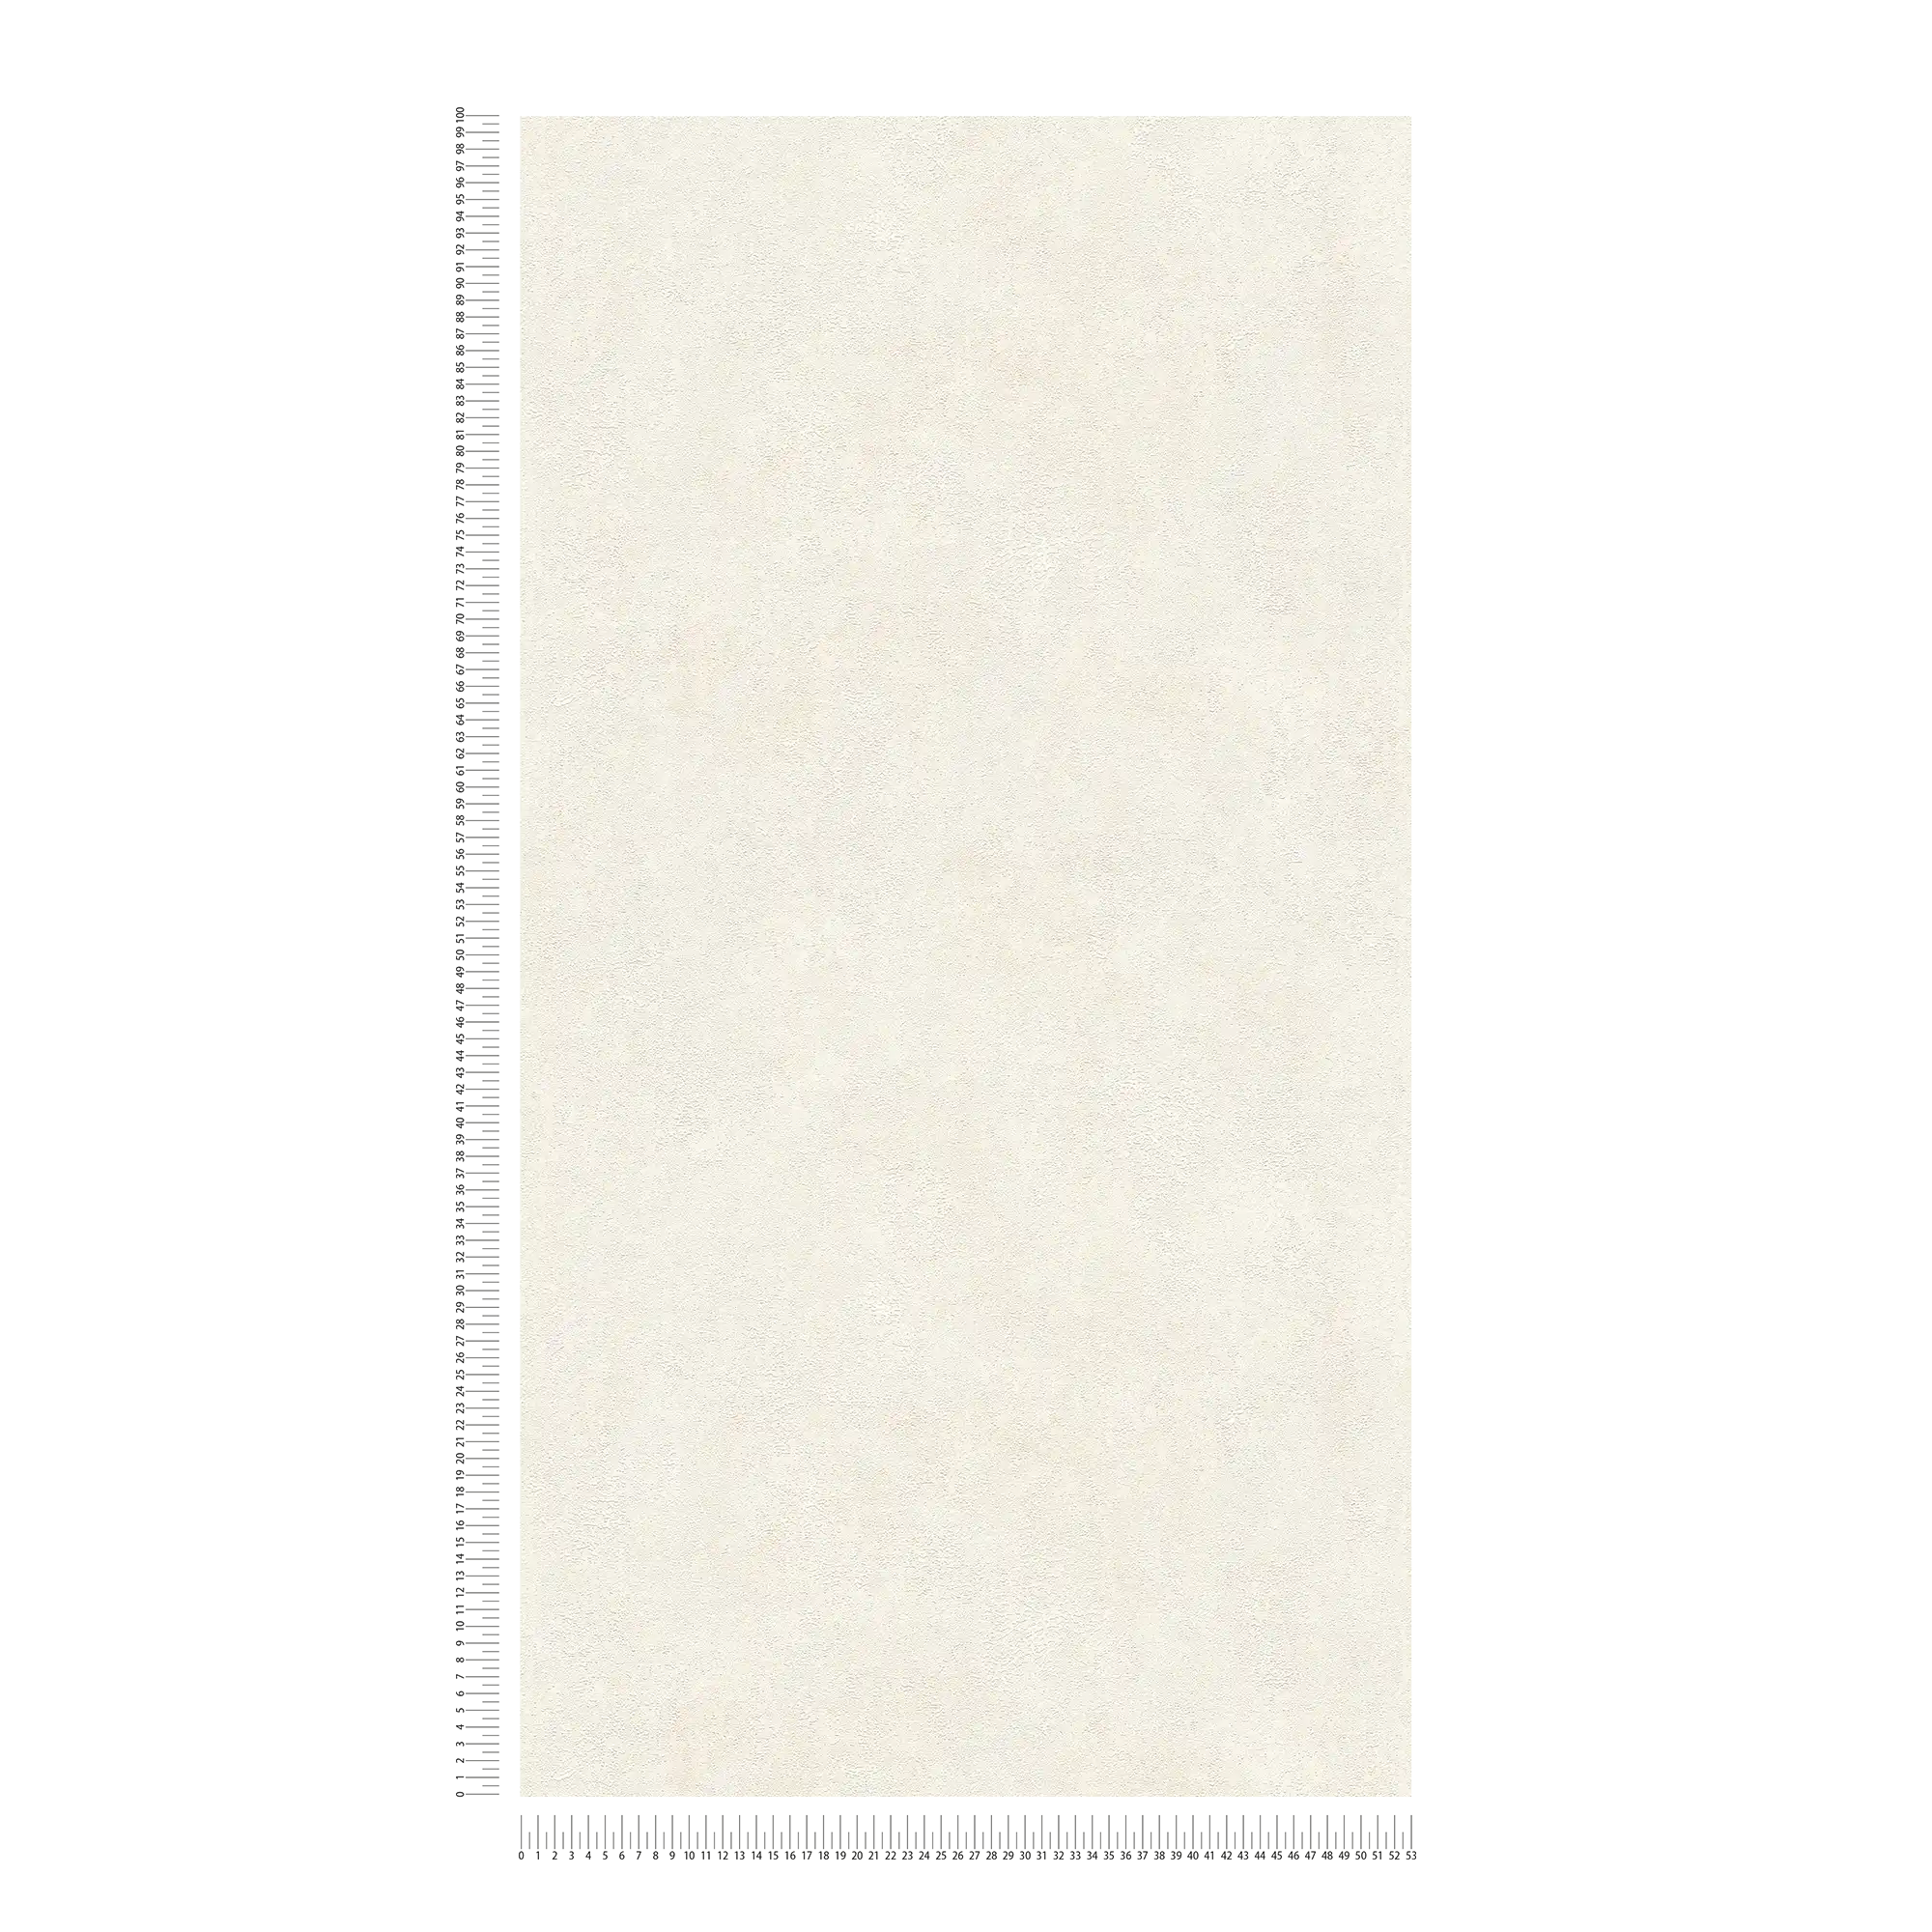             Papel pintado no tejido con ligeros toques de brillo - crema, blanco
        